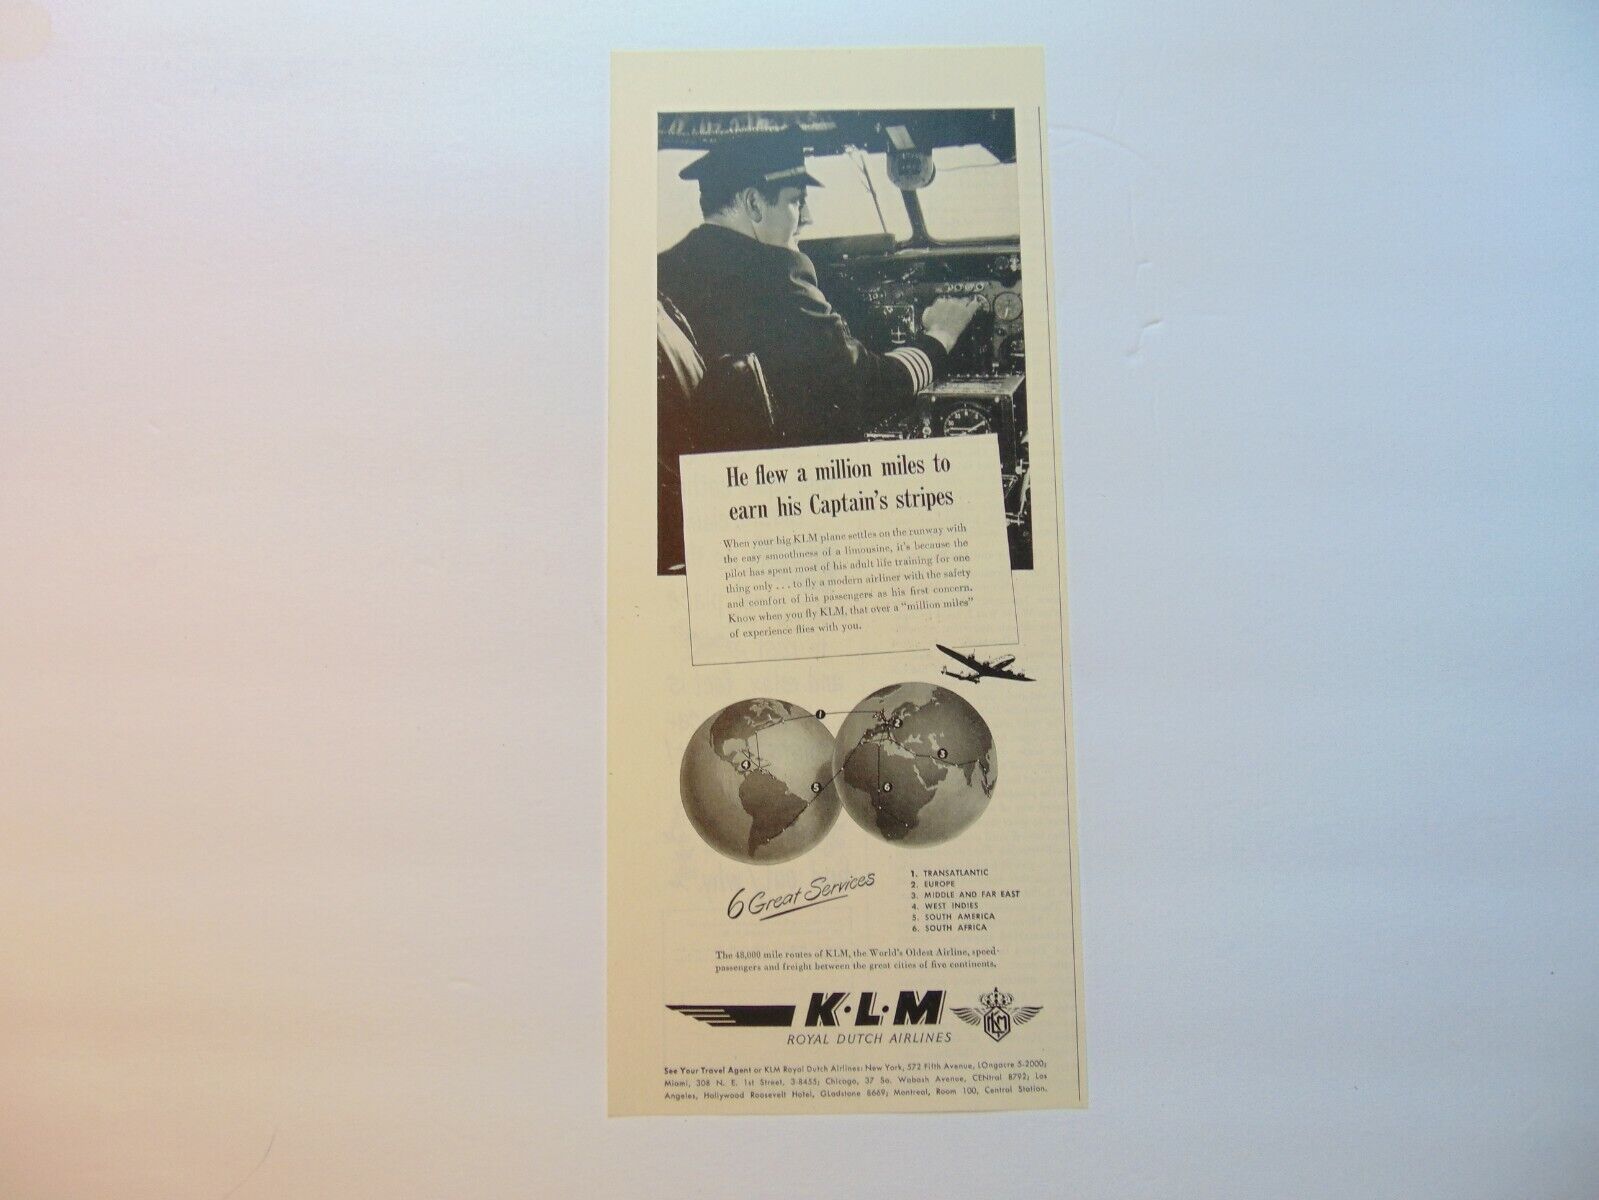 1948 K.L.M. ROYAL DUTCH AIRLINES Globe Captain Flew a Million Miles art print ad